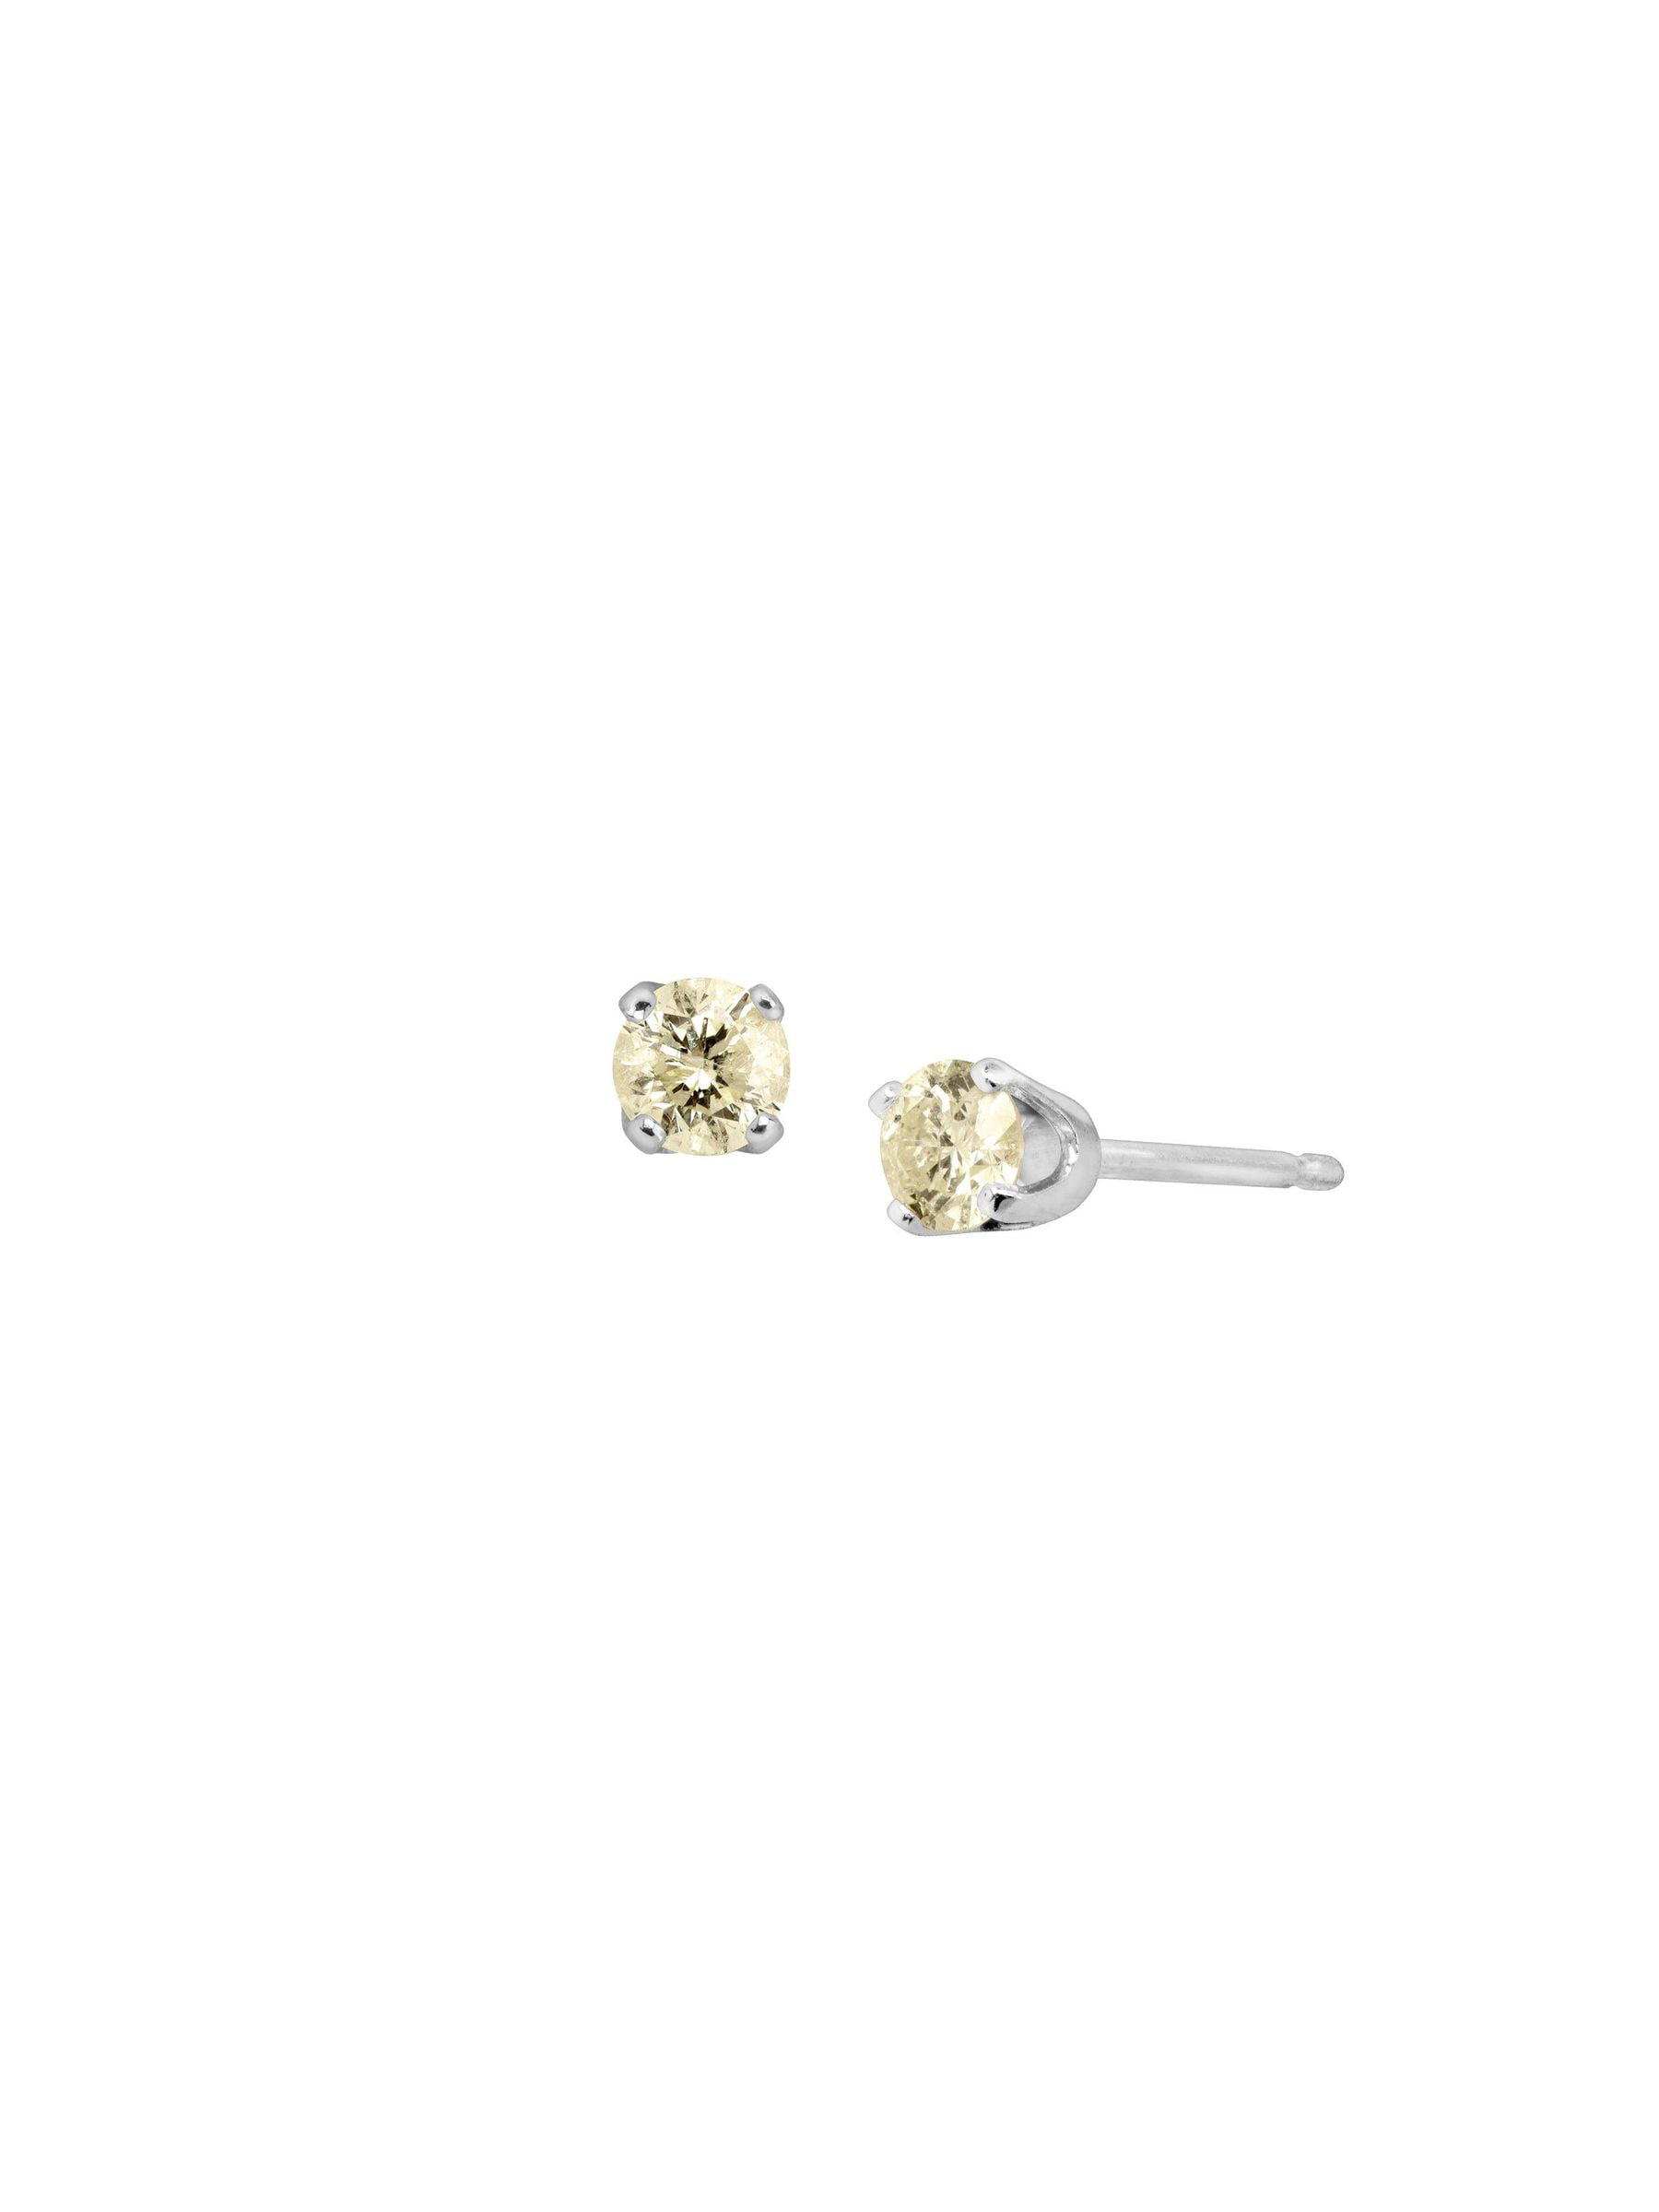 Finecraft 1 cttw Diamond Wide Hoop Earrings in Sterling Silver